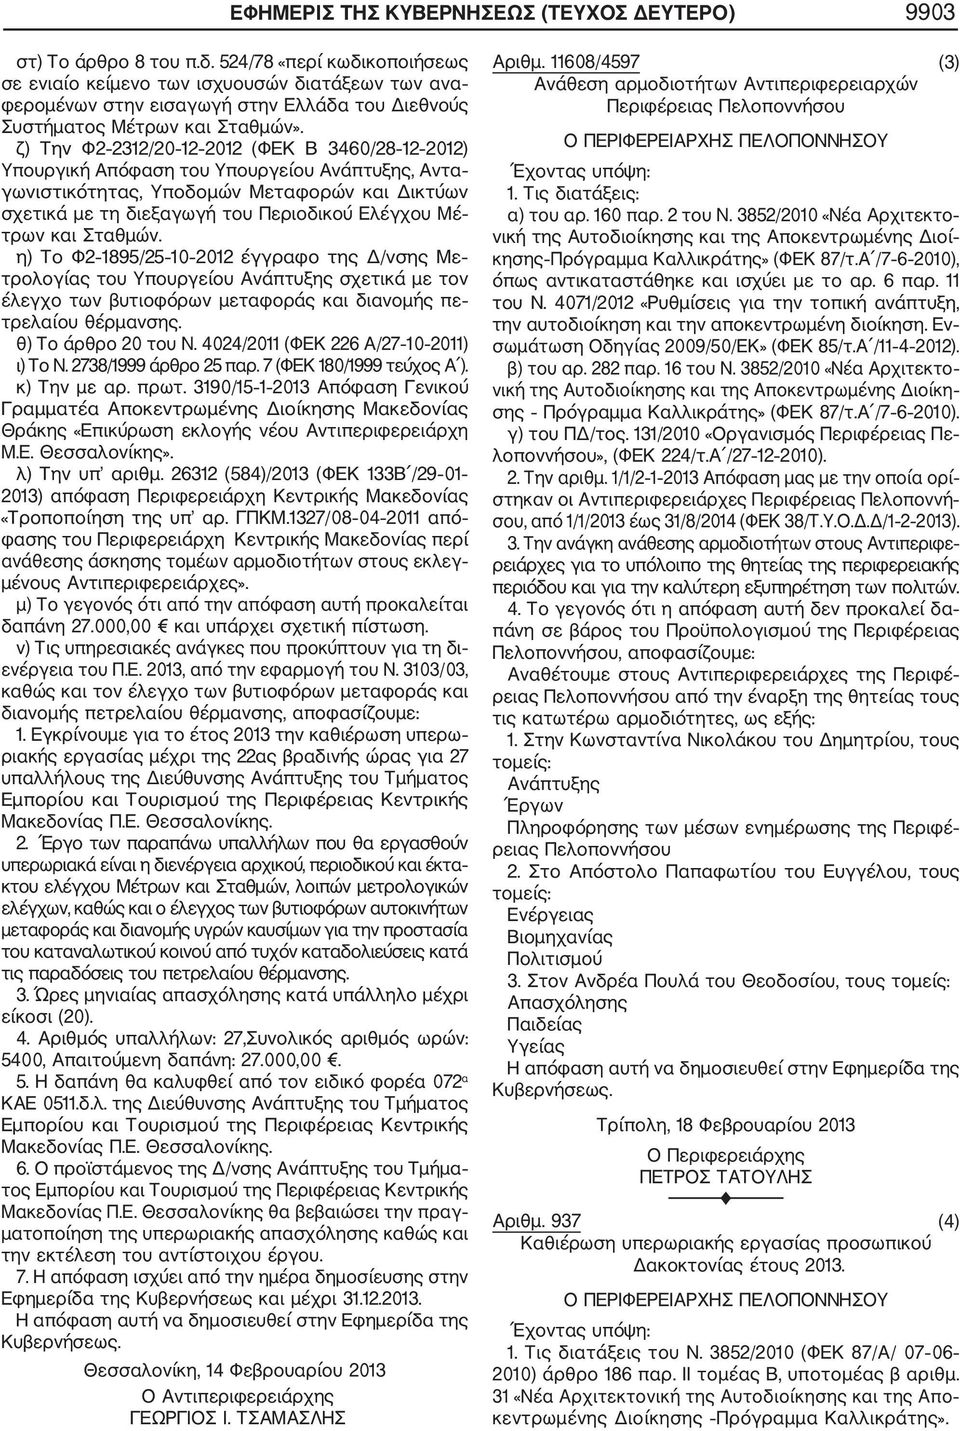 ζ) Την Φ2 2312/20 12 2012 (ΦΕΚ Β 3460/28 12 2012) Υπουργική Απόφαση του Υπουργείου Ανάπτυξης, Αντα γωνιστικότητας, Υποδομών Μεταφορών και Δικτύων σχετικά με τη διεξαγωγή του Περιοδικού Ελέγχου Μέ